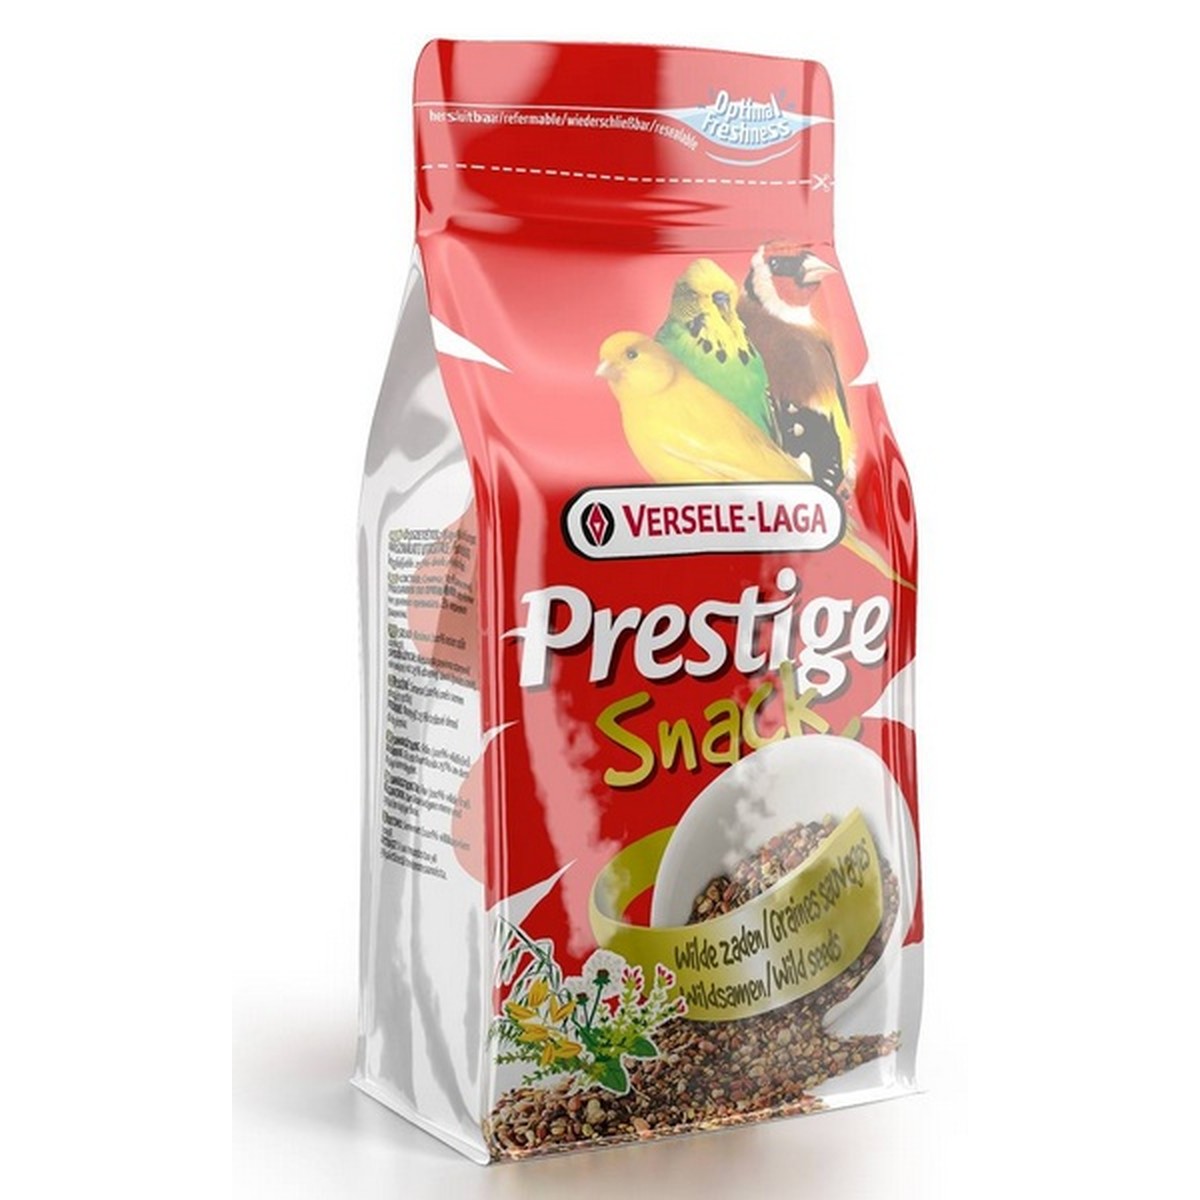   Prestige Snack Graines Sauvage. 125 g  125g